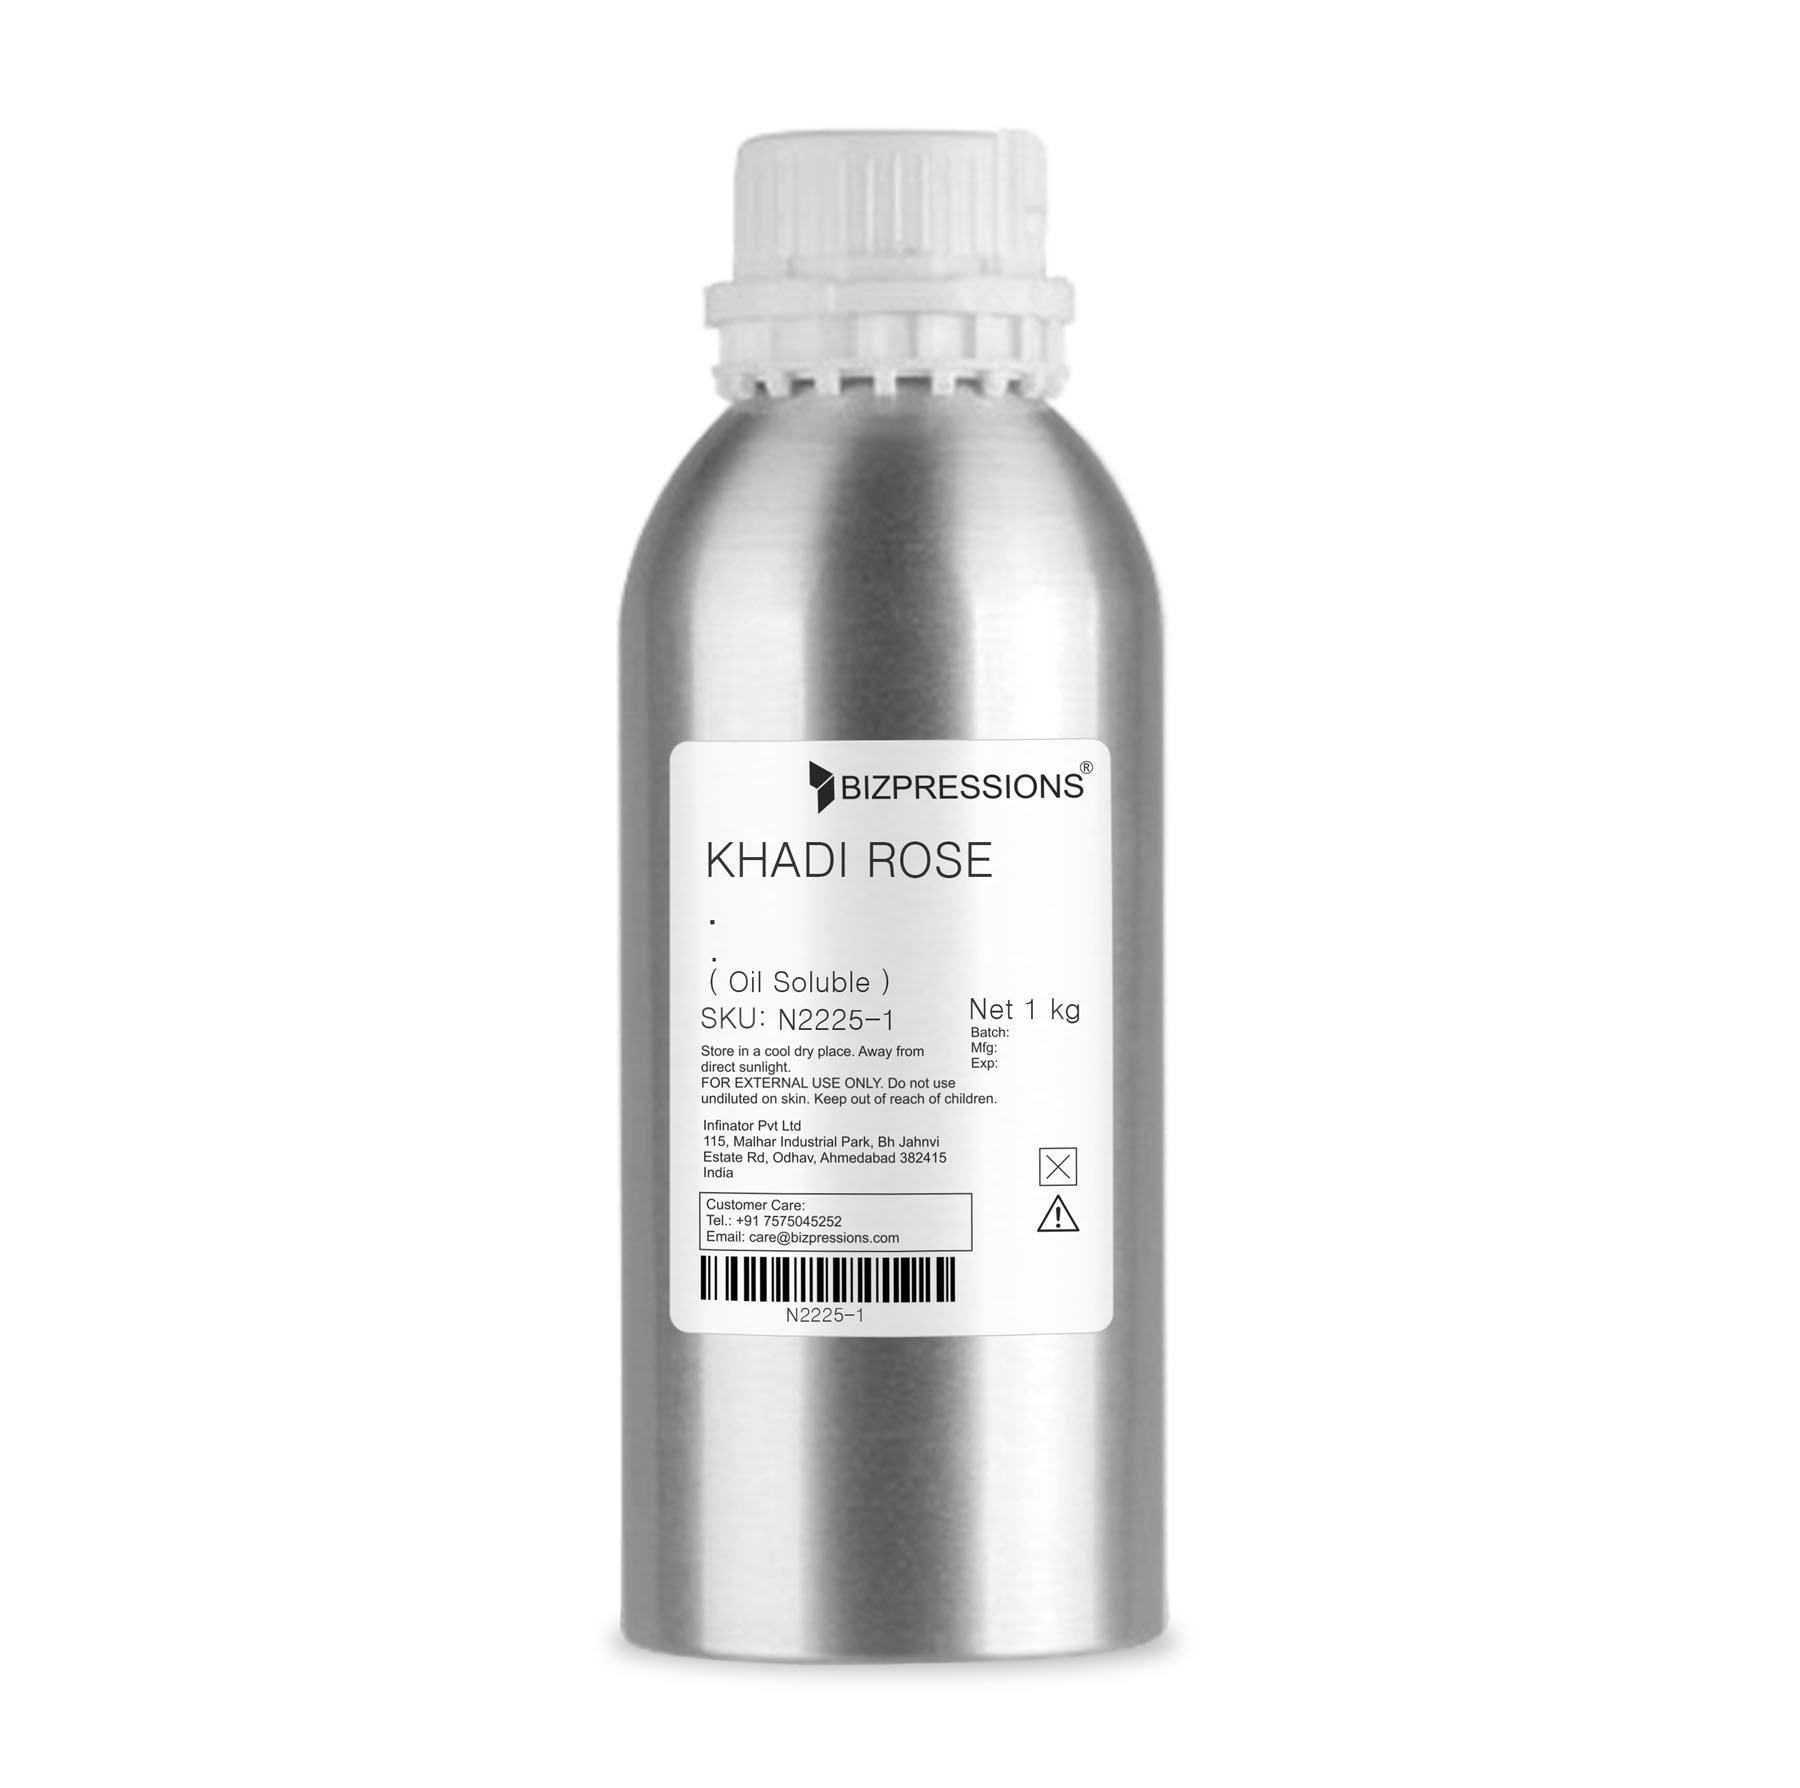 KHADI ROSE - Fragrance ( Oil Soluble ) - 1 kg